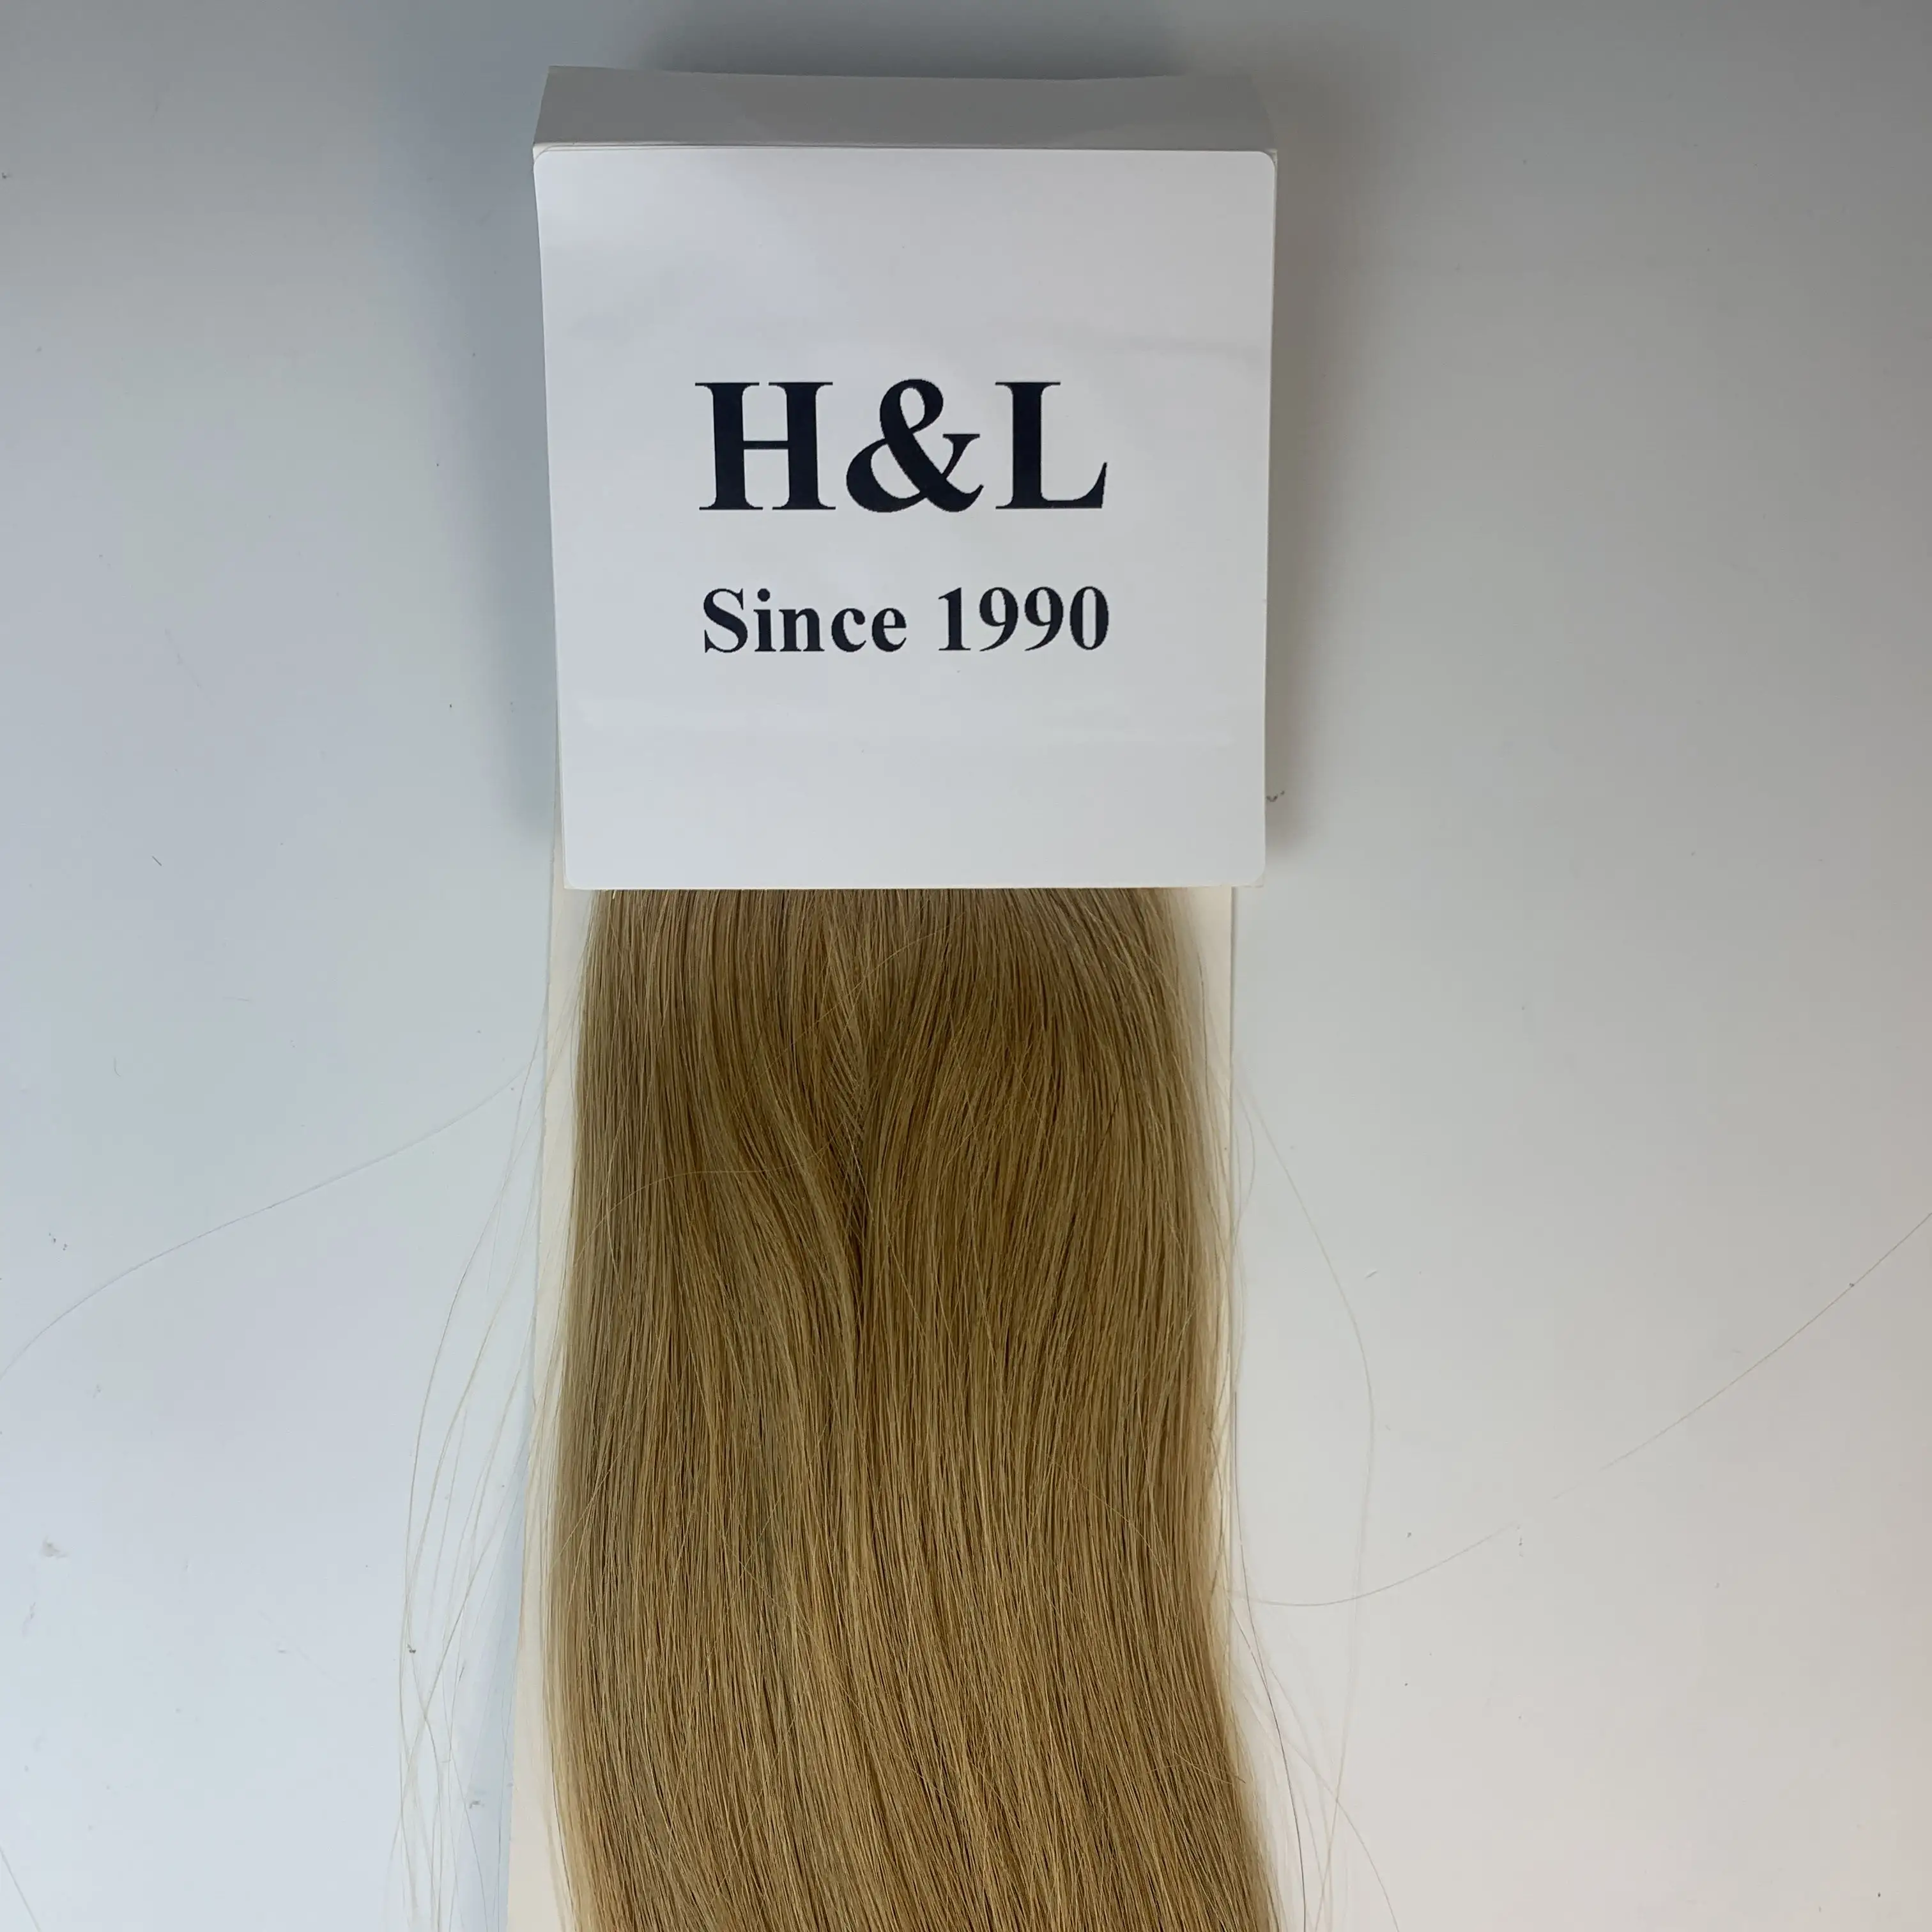 H & L Sejak 1990 Pabrik Menyediakan Rambut Palsu Rambut Manusia Berkualitas Tinggi